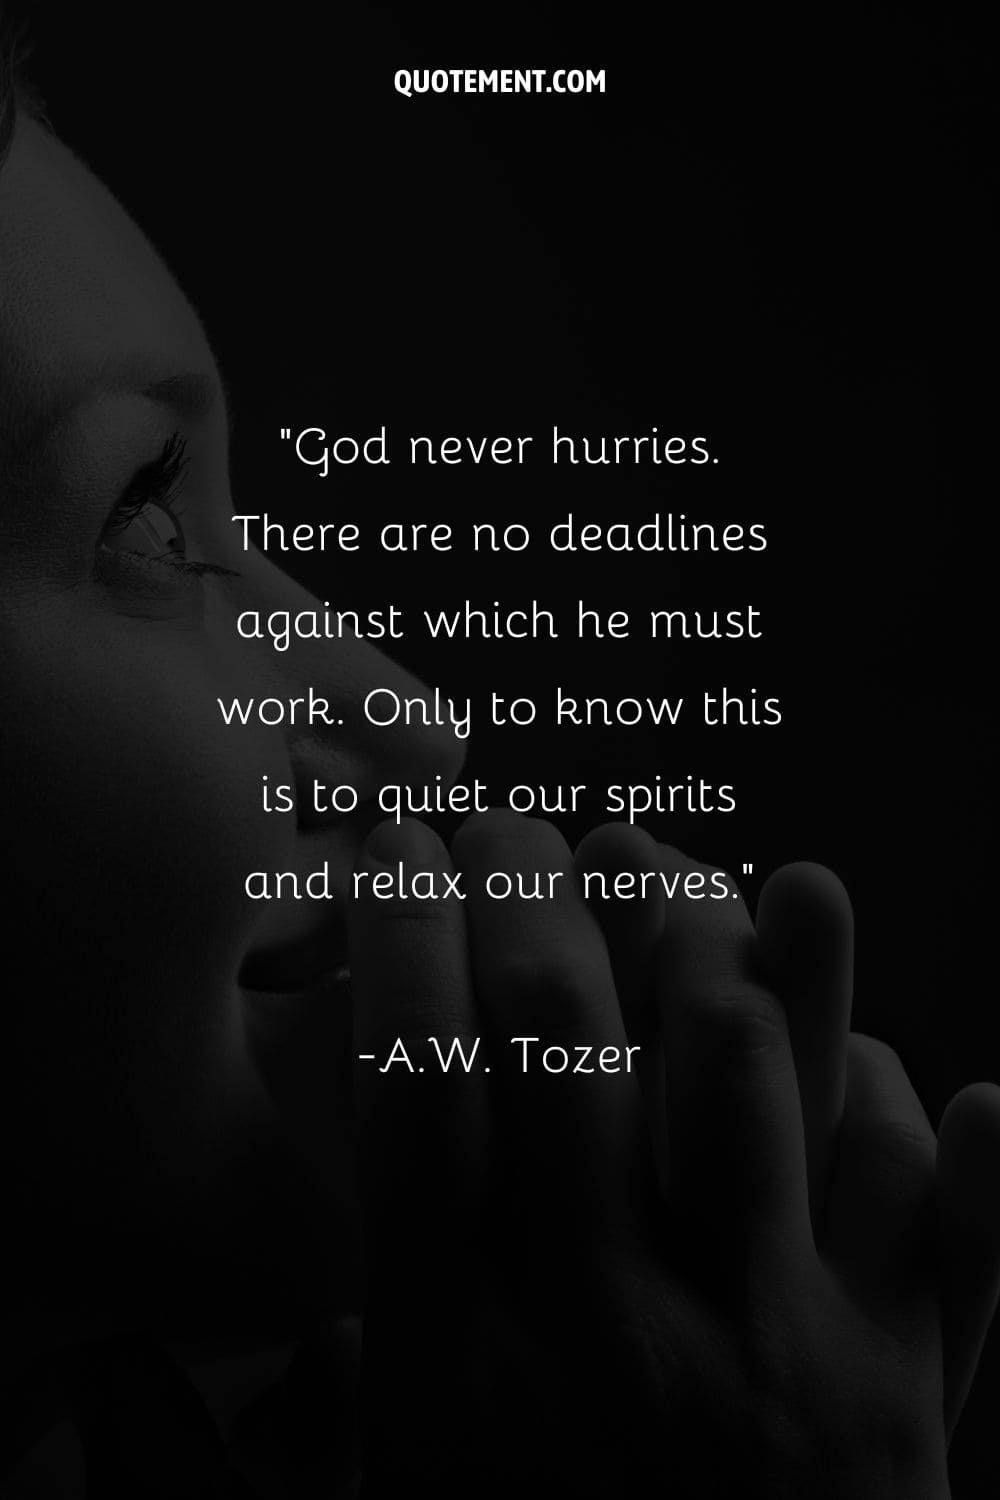 Imagen de una persona pacífica inclinada en oración que representa una cita sobre la confianza en el tiempo de Dios.